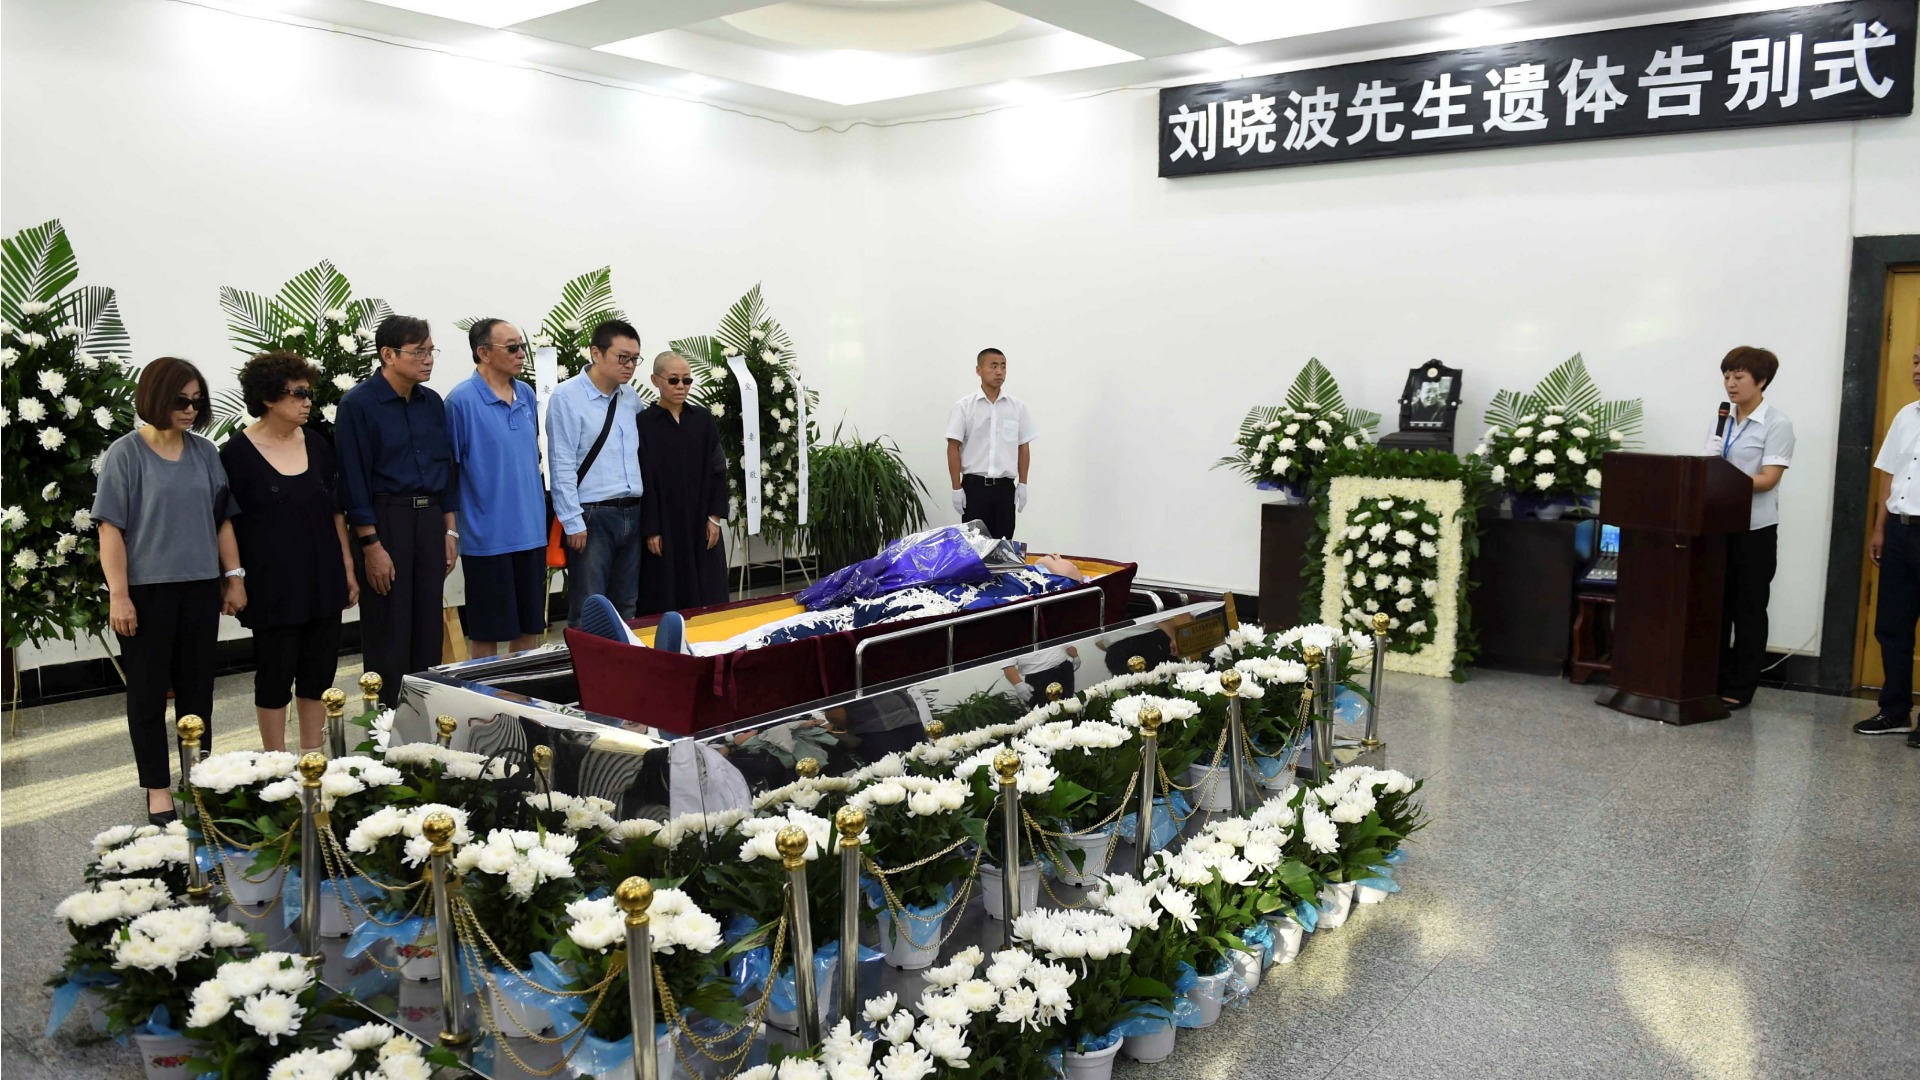 El cuerpo del Nobel de la Paz Liu Xiaobo es incinerado en una ceremonia privada